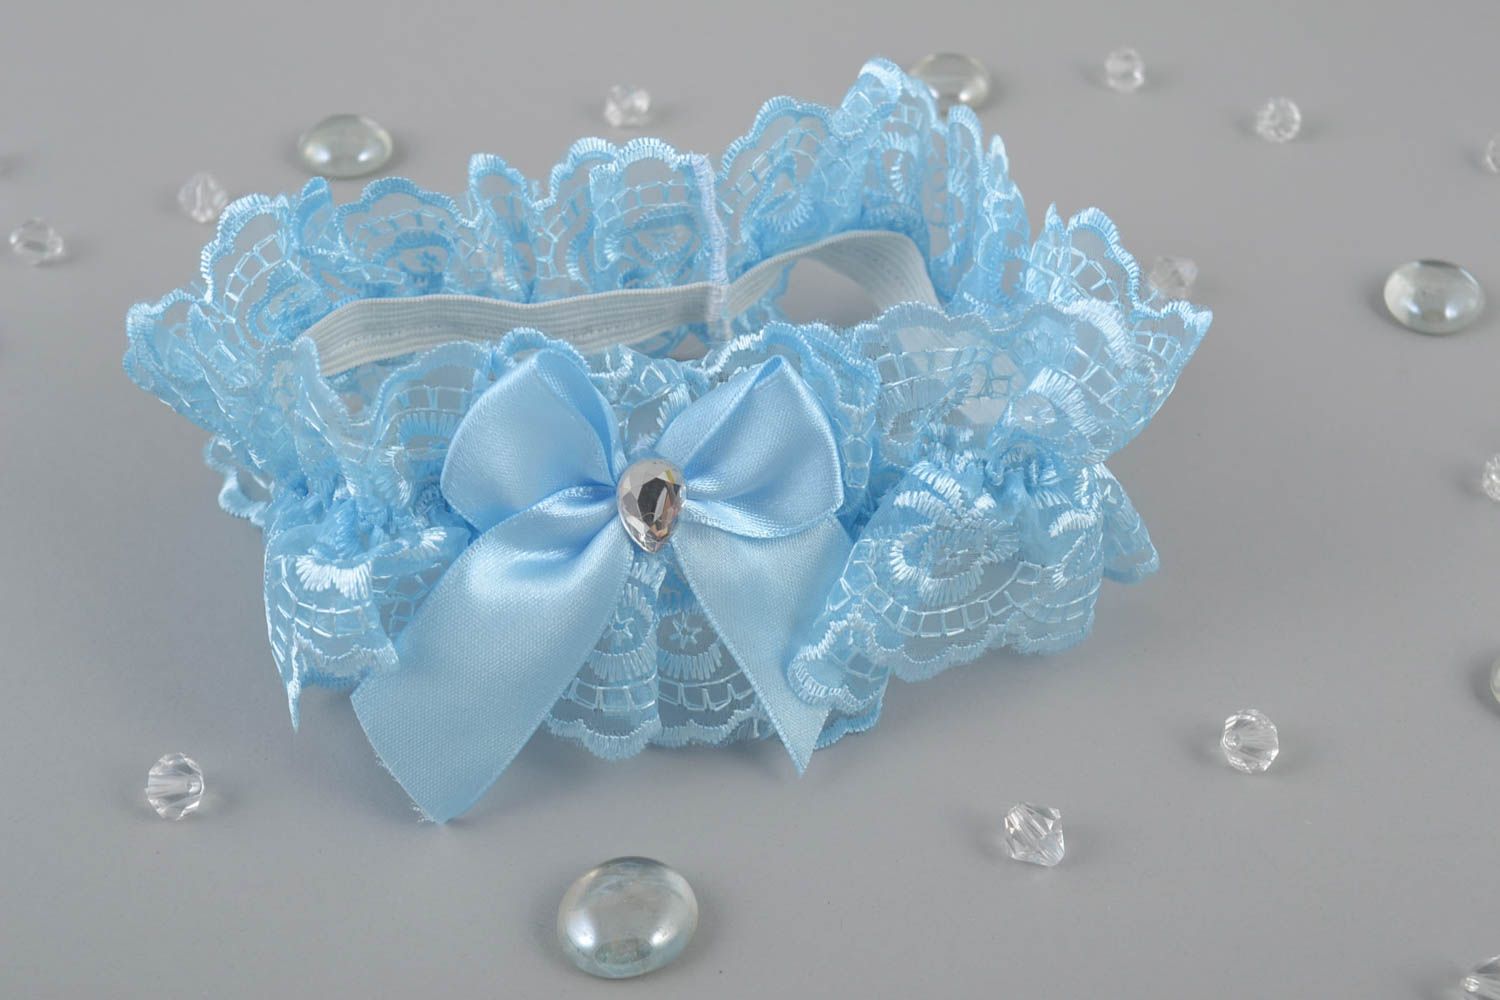 Jarretière de mariée bleue avec noeud en guipure faite main stylée élégante photo 1